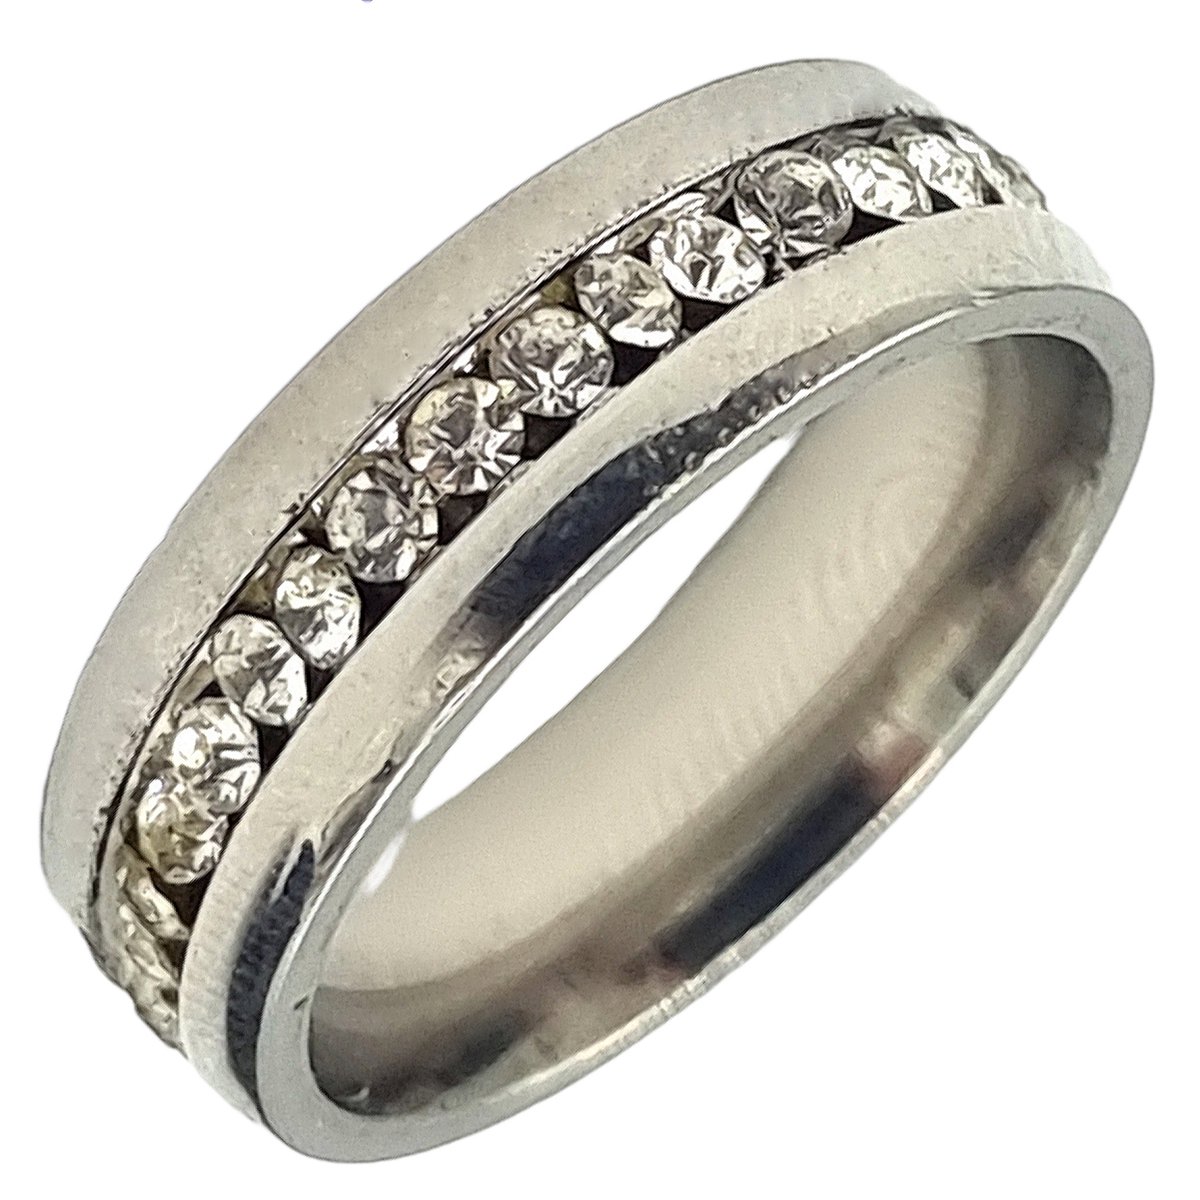 Tesoro Mio Michel – Dames Ring Voor Vrouw – Staal In Kleur Zilver – Met Zirkonia Stenen – 18 mm / Maat 57